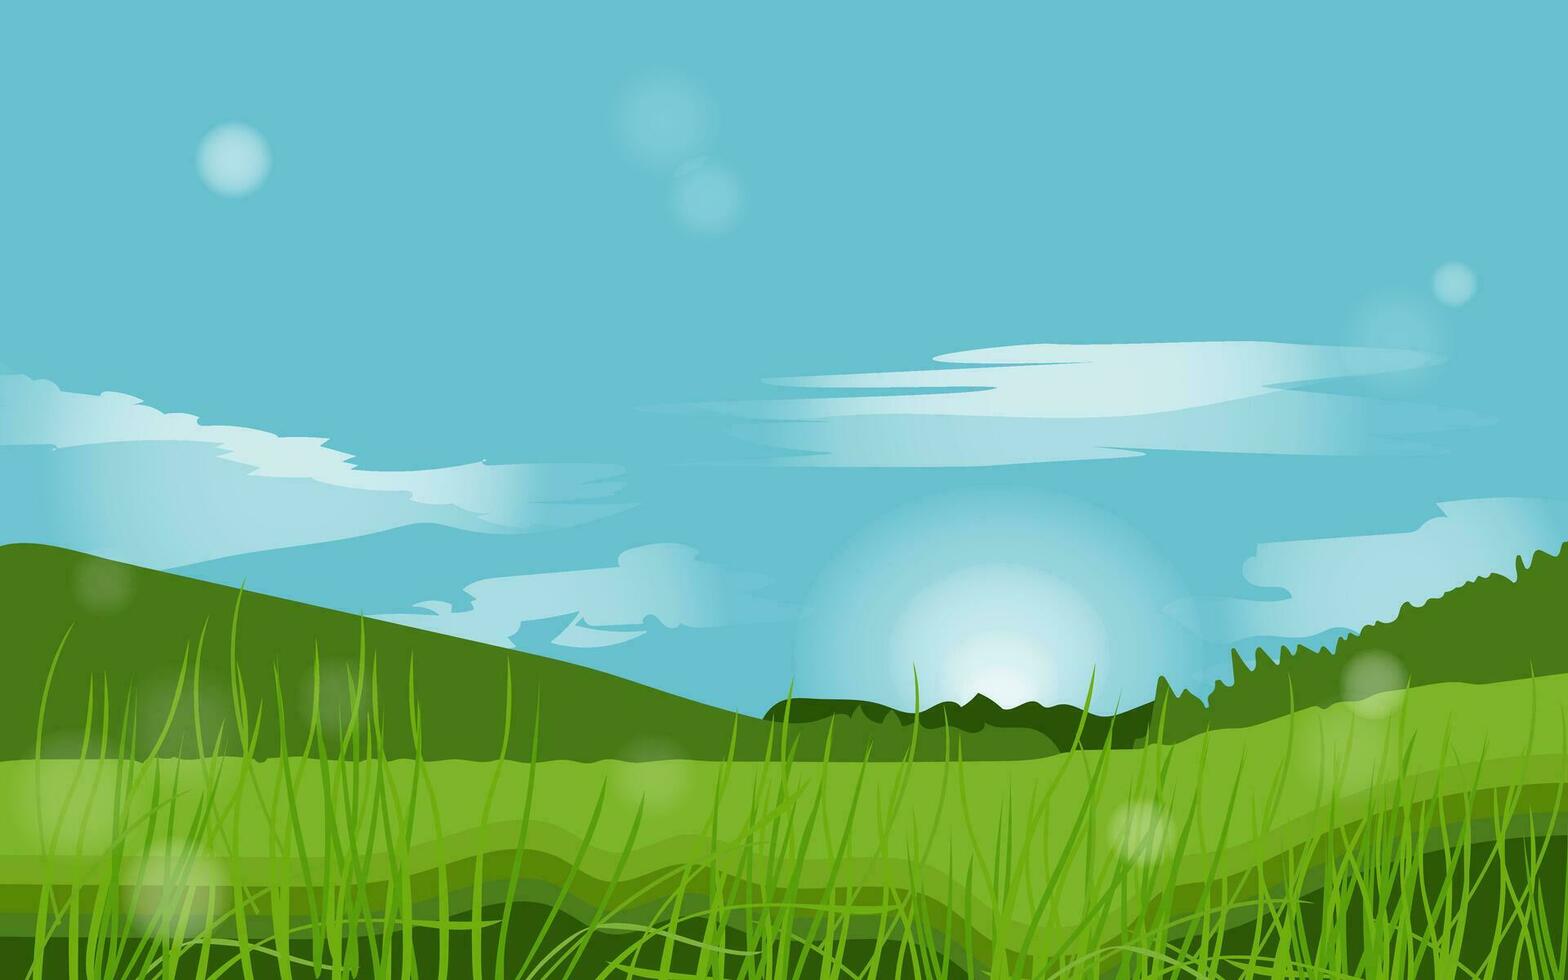 été Prairie champ.nature paysage pour fonds d'écran ou panorama vue sur prairie, prairie ou clairière horizon scène avec ciel et soleil, herbe et des arbres, des nuages. vecteur illustration